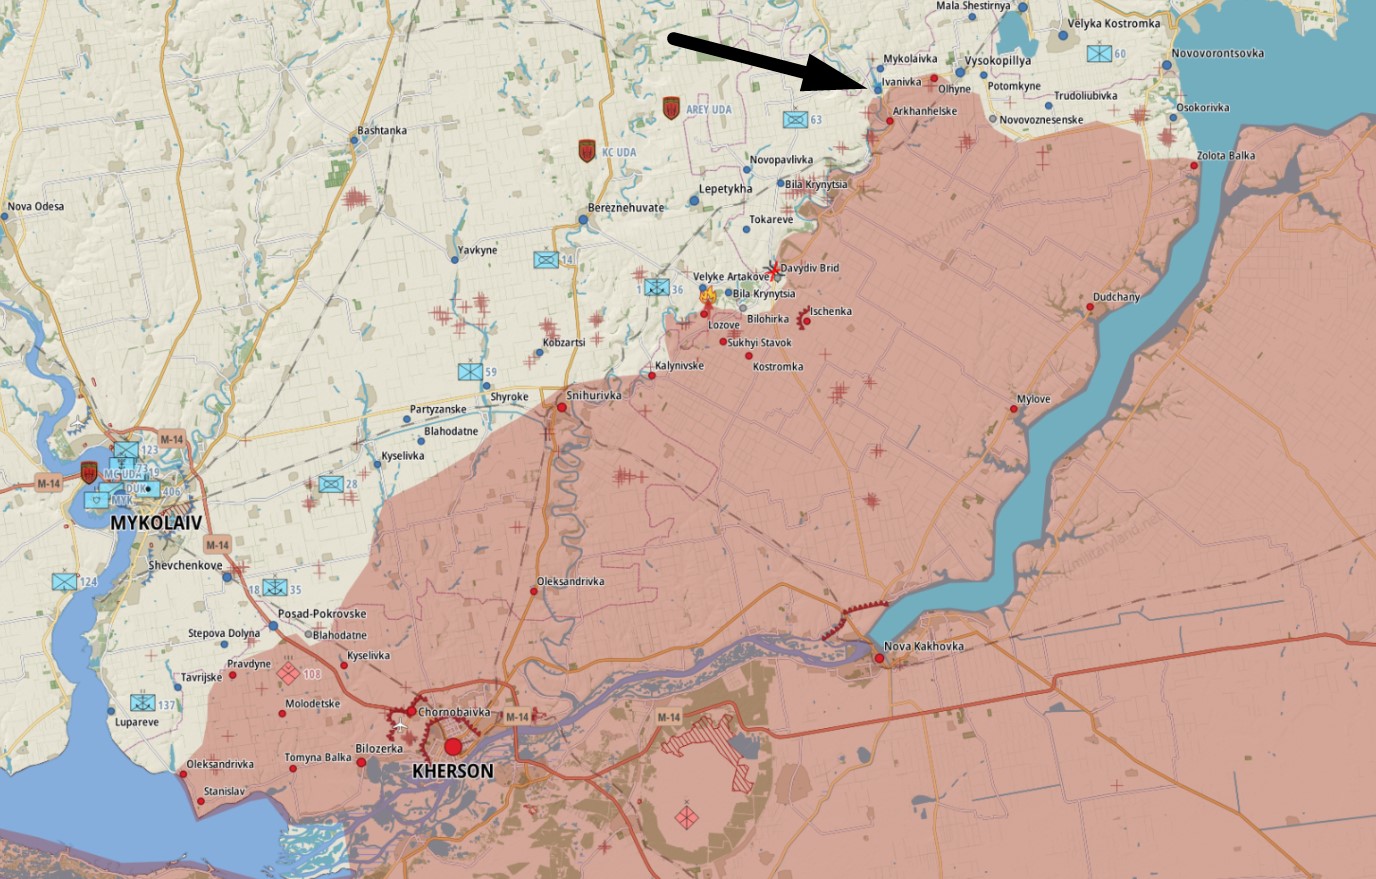 Іванівка Херсонської області на неофіційній мапі станом на 9 липня 2022 року